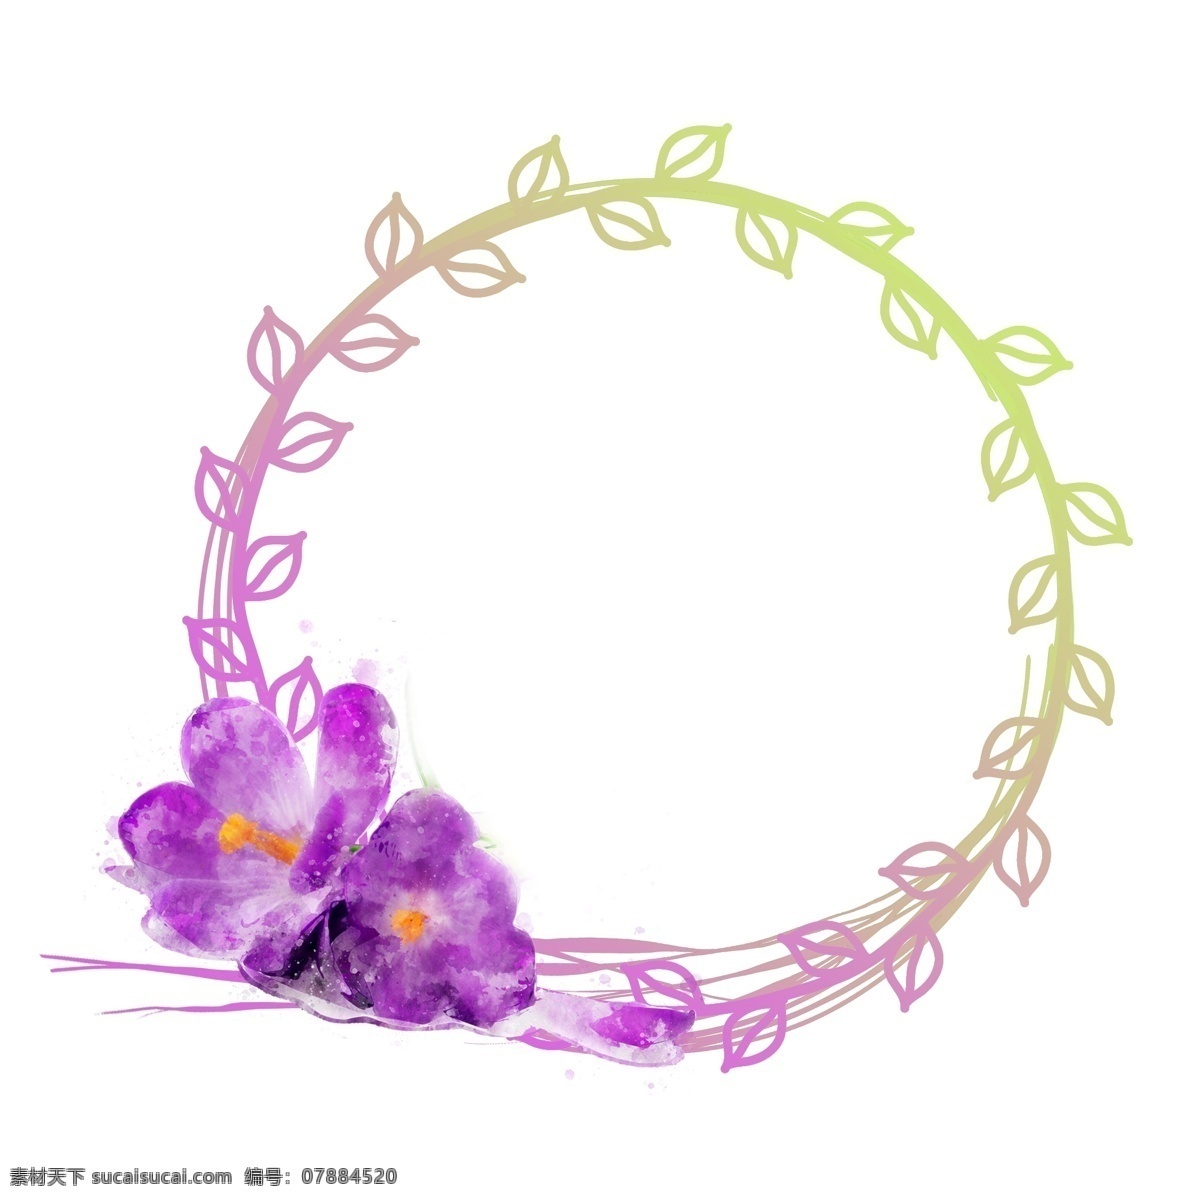 手绘 紫色 植物 花卉 水彩 圆形 边框 元素 原创 手绘边框 植物边框 花卉边框